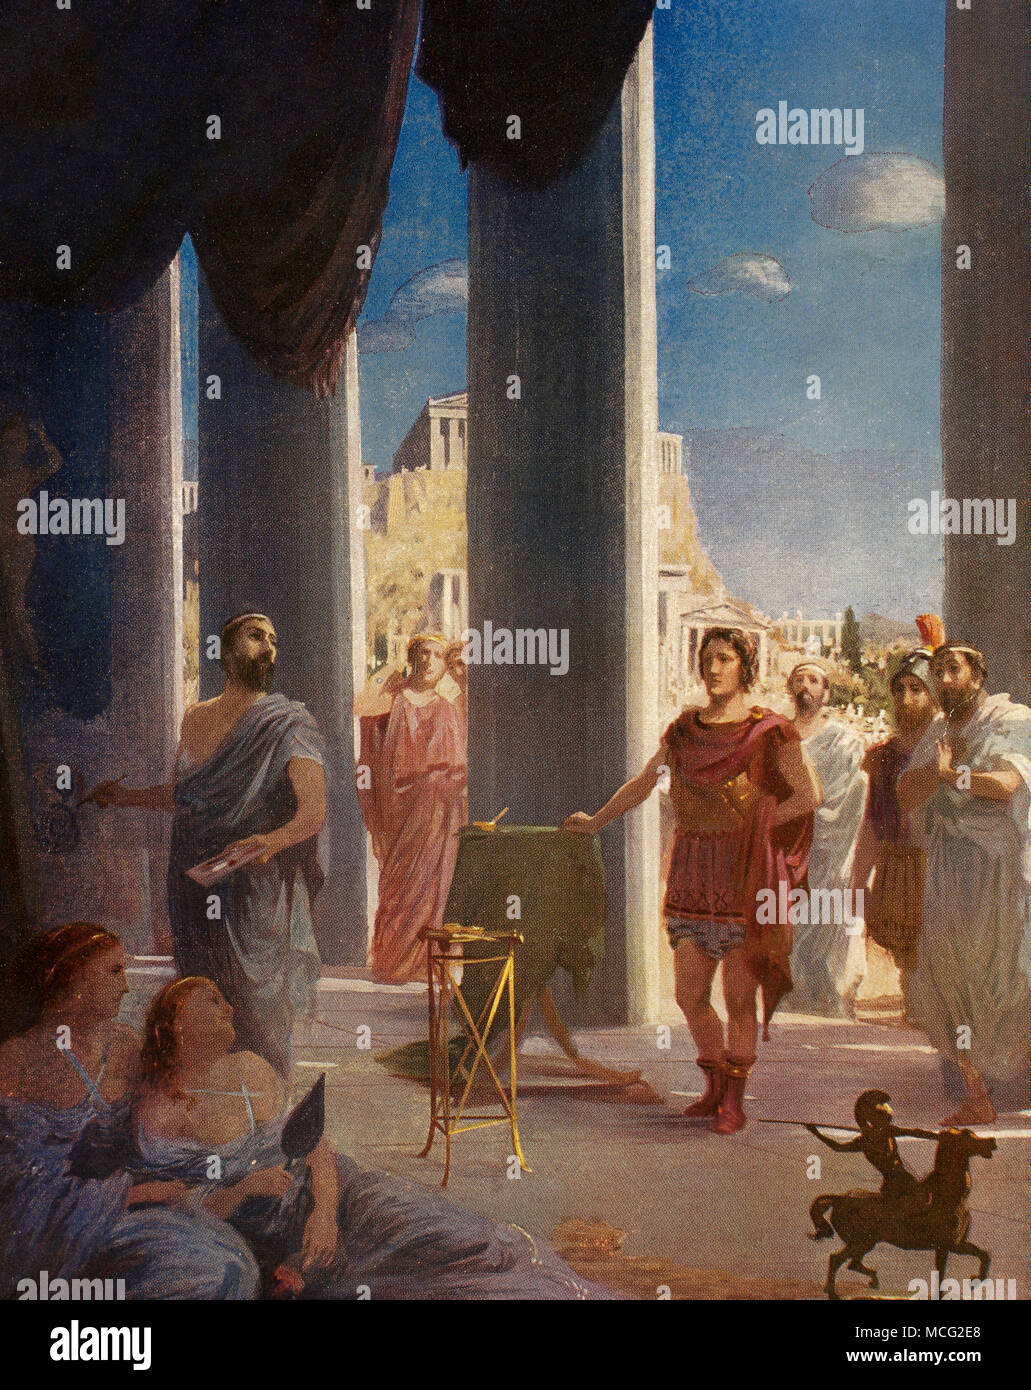 Apelle, che è di Kos (IV secolo a.C.). Pittore della Grecia antica. Alessandro il Grande visitando l'artista Apelle, che è nella sua bottega. Illustrazione a colori. Foto Stock